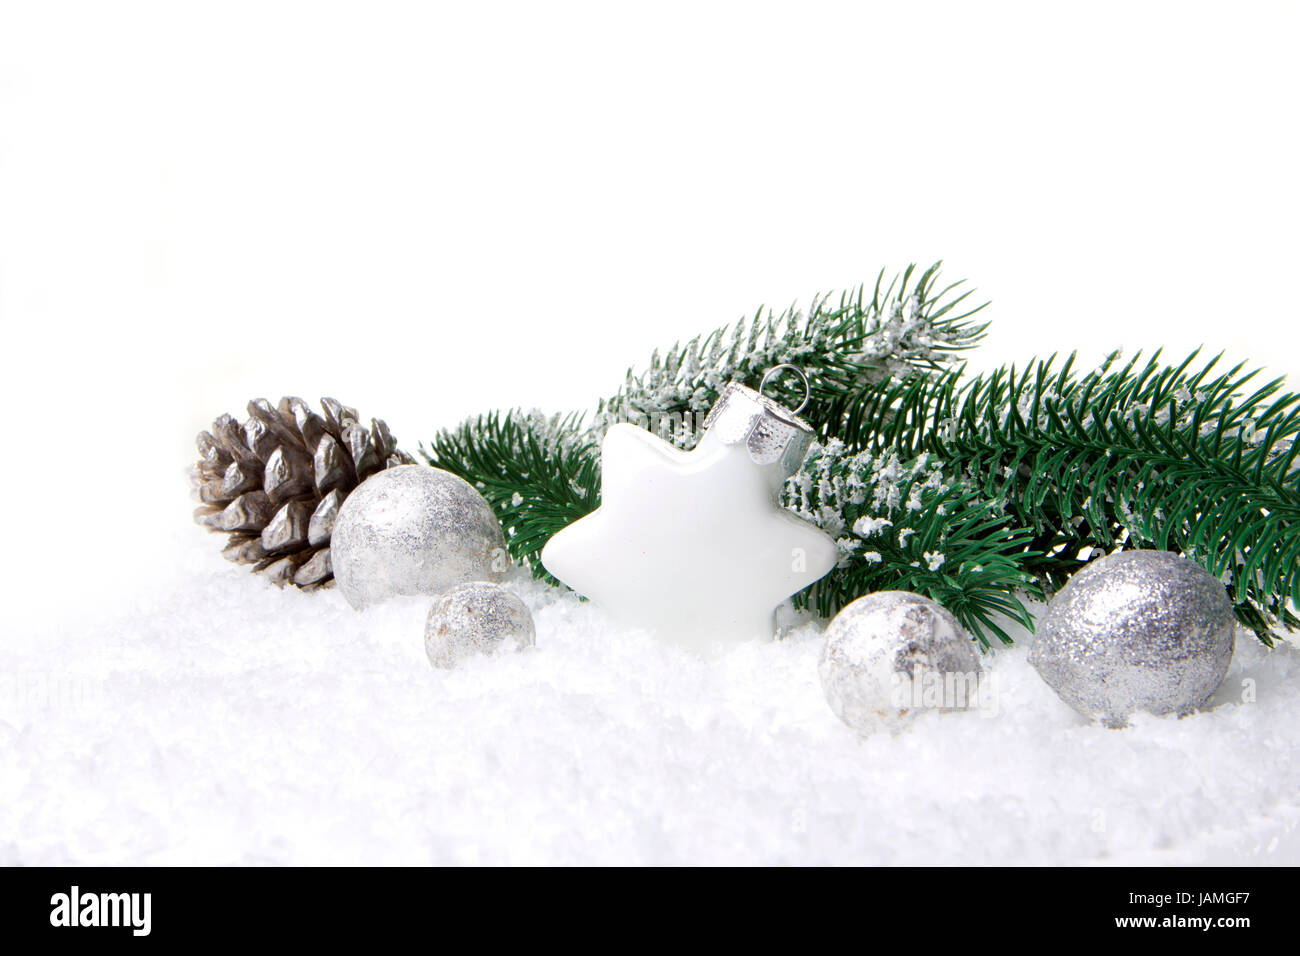 Weihnachten, Dekoration mit Tannenzweig, Tannenzapfen, Weihnachtskugel  silber und weiß Stock Photo - Alamy